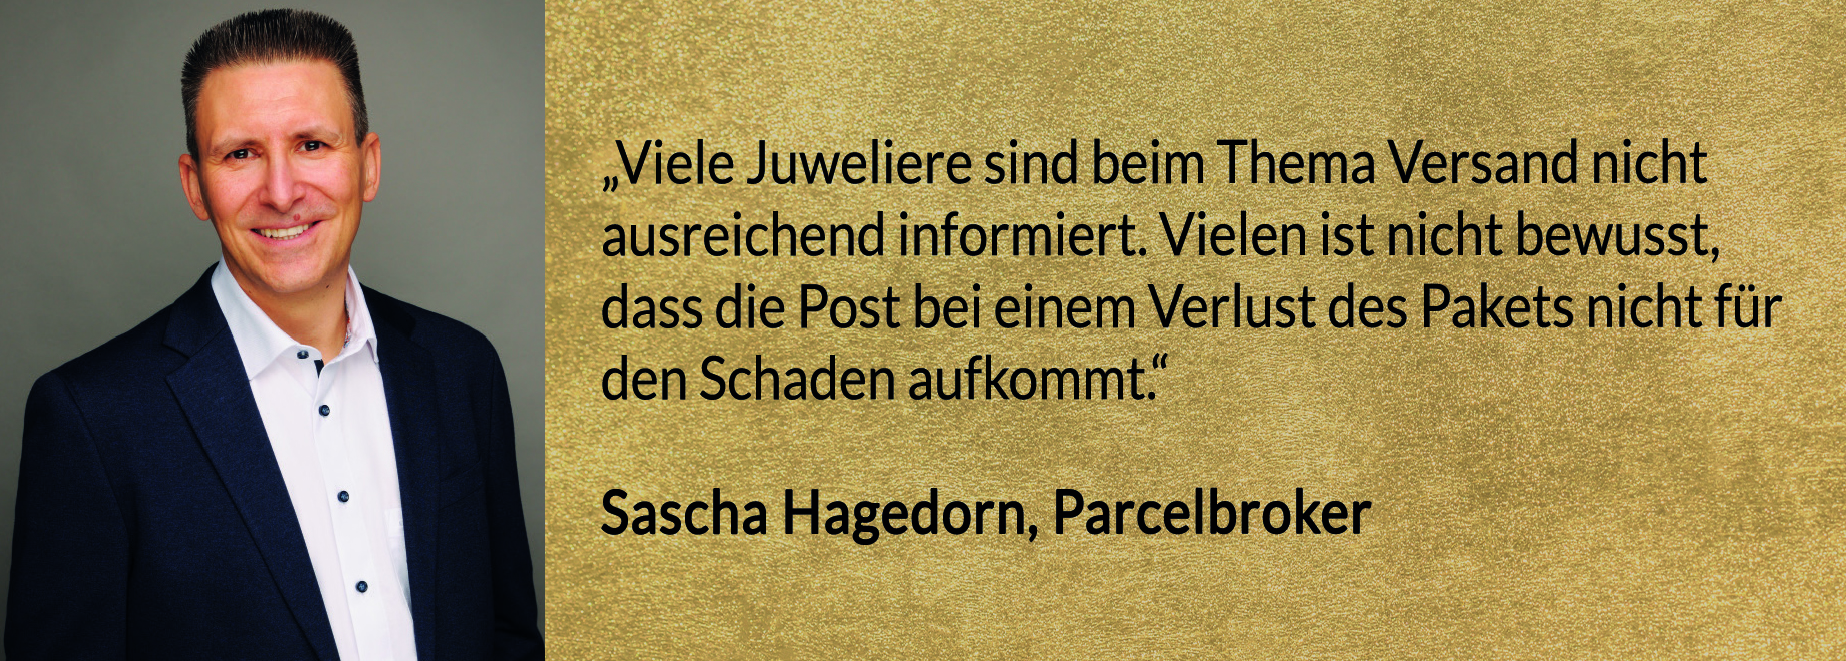 Parcelbroker_Transport_Versicherung_Juweliere_Sascha_Hagedorn